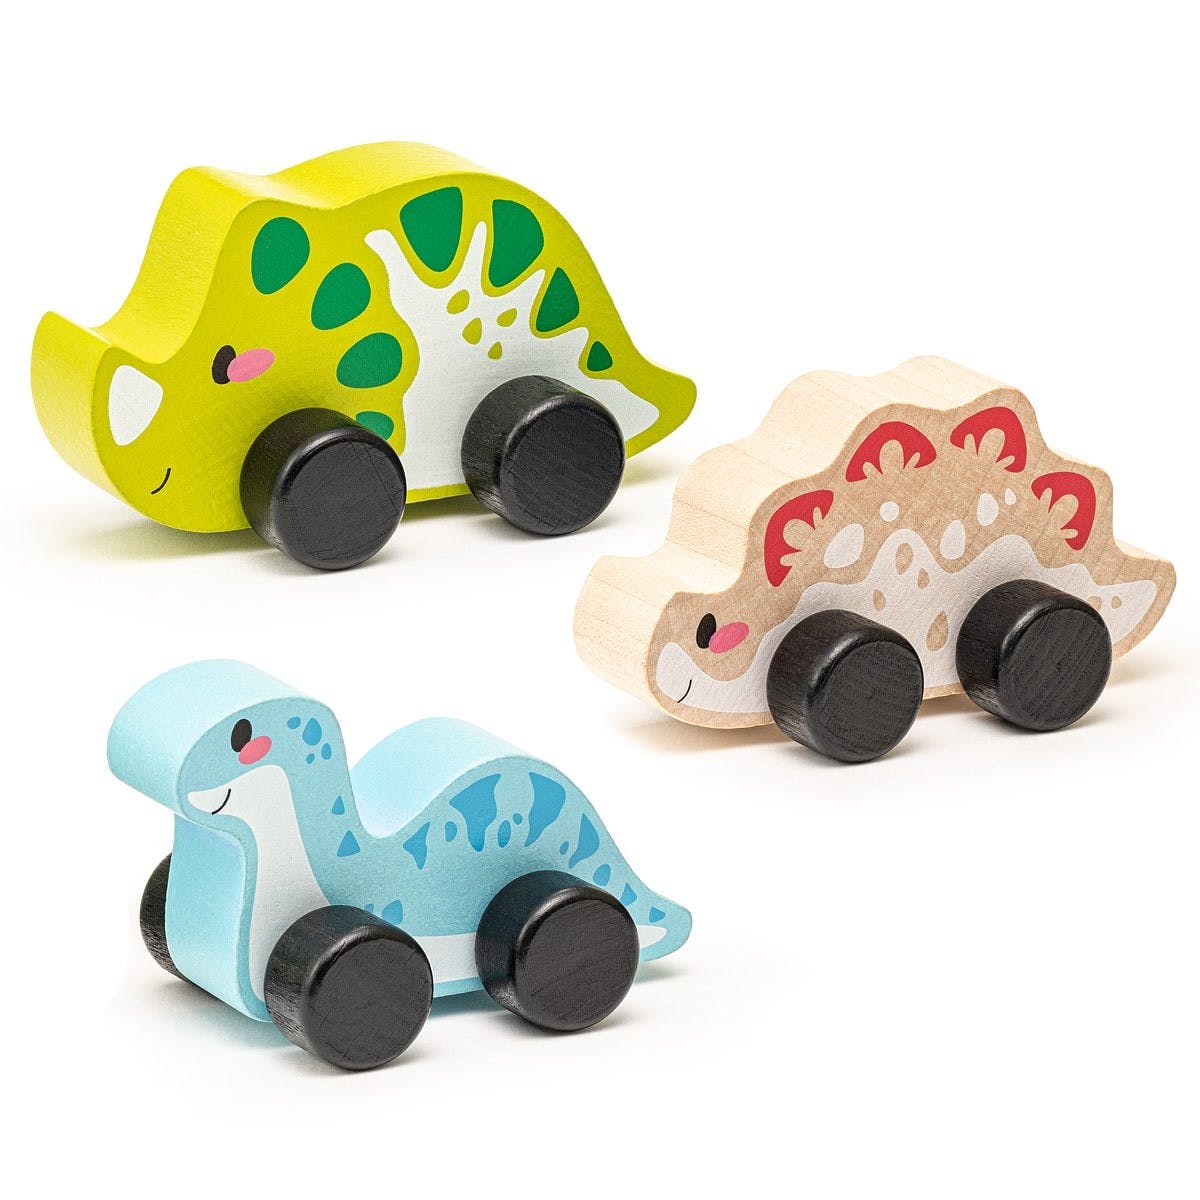 Cubika - Wooden toy set "Joyful dinos" - Playlaan